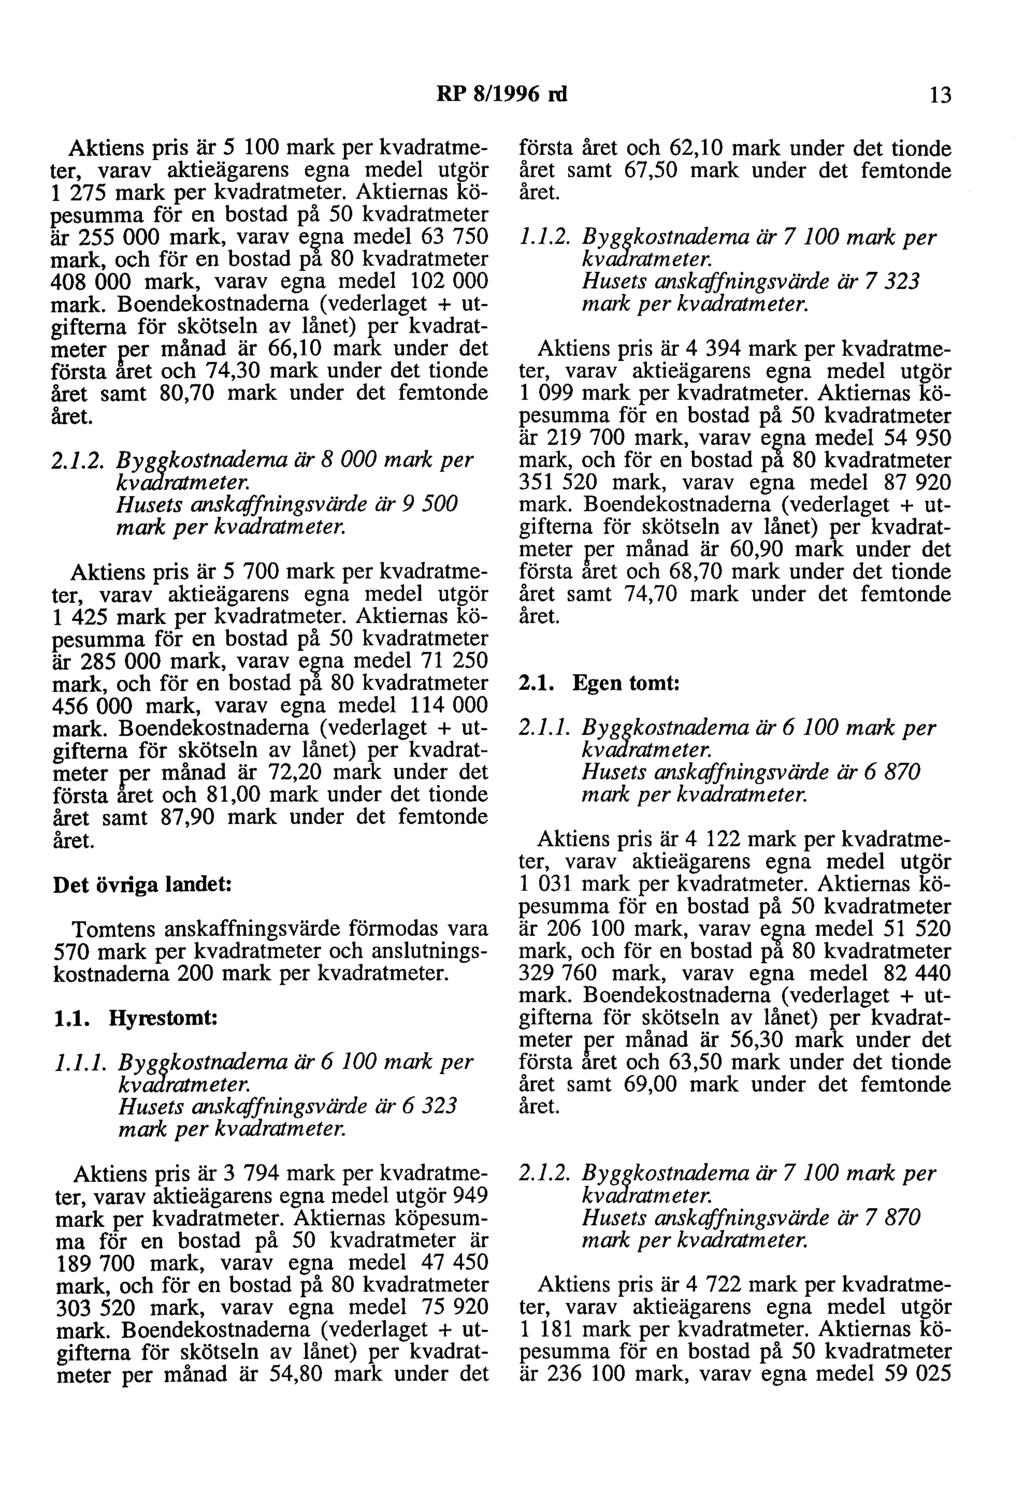 RP 8/1996 nl 13 Aktiens pris är 5 l 00 mark per kvadratmeter, varav aktieägarens egna medel utgör l 275mark per kvadratmeter.